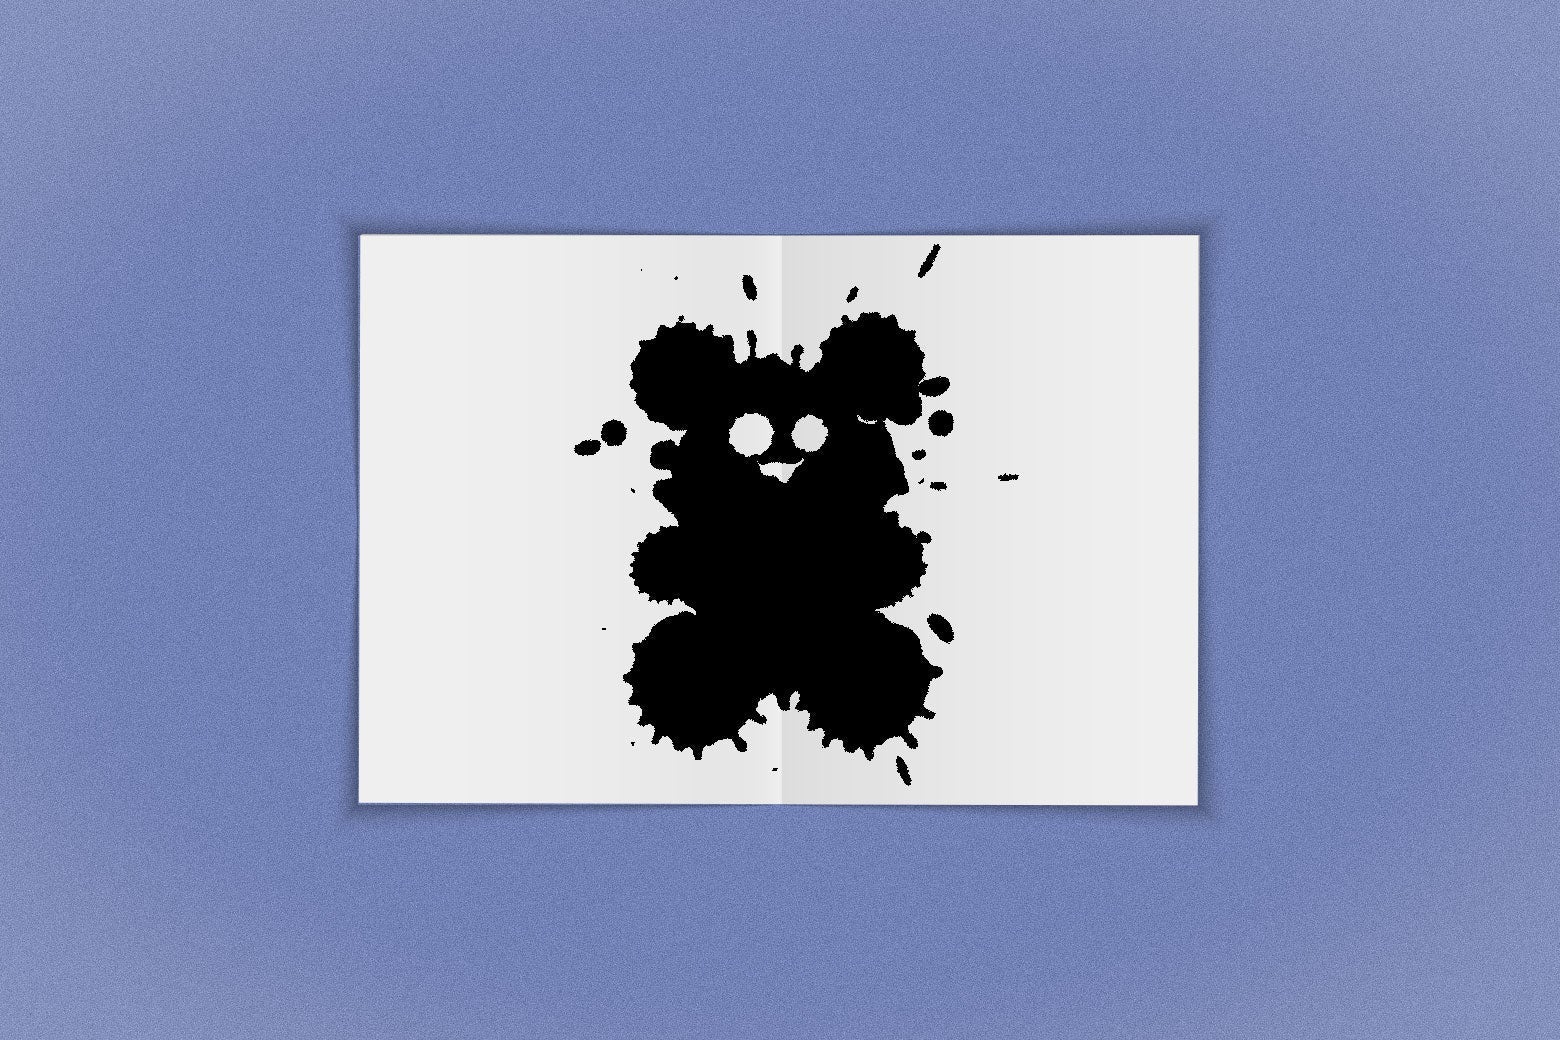 A Rorschach test that looks like a teddy bear.